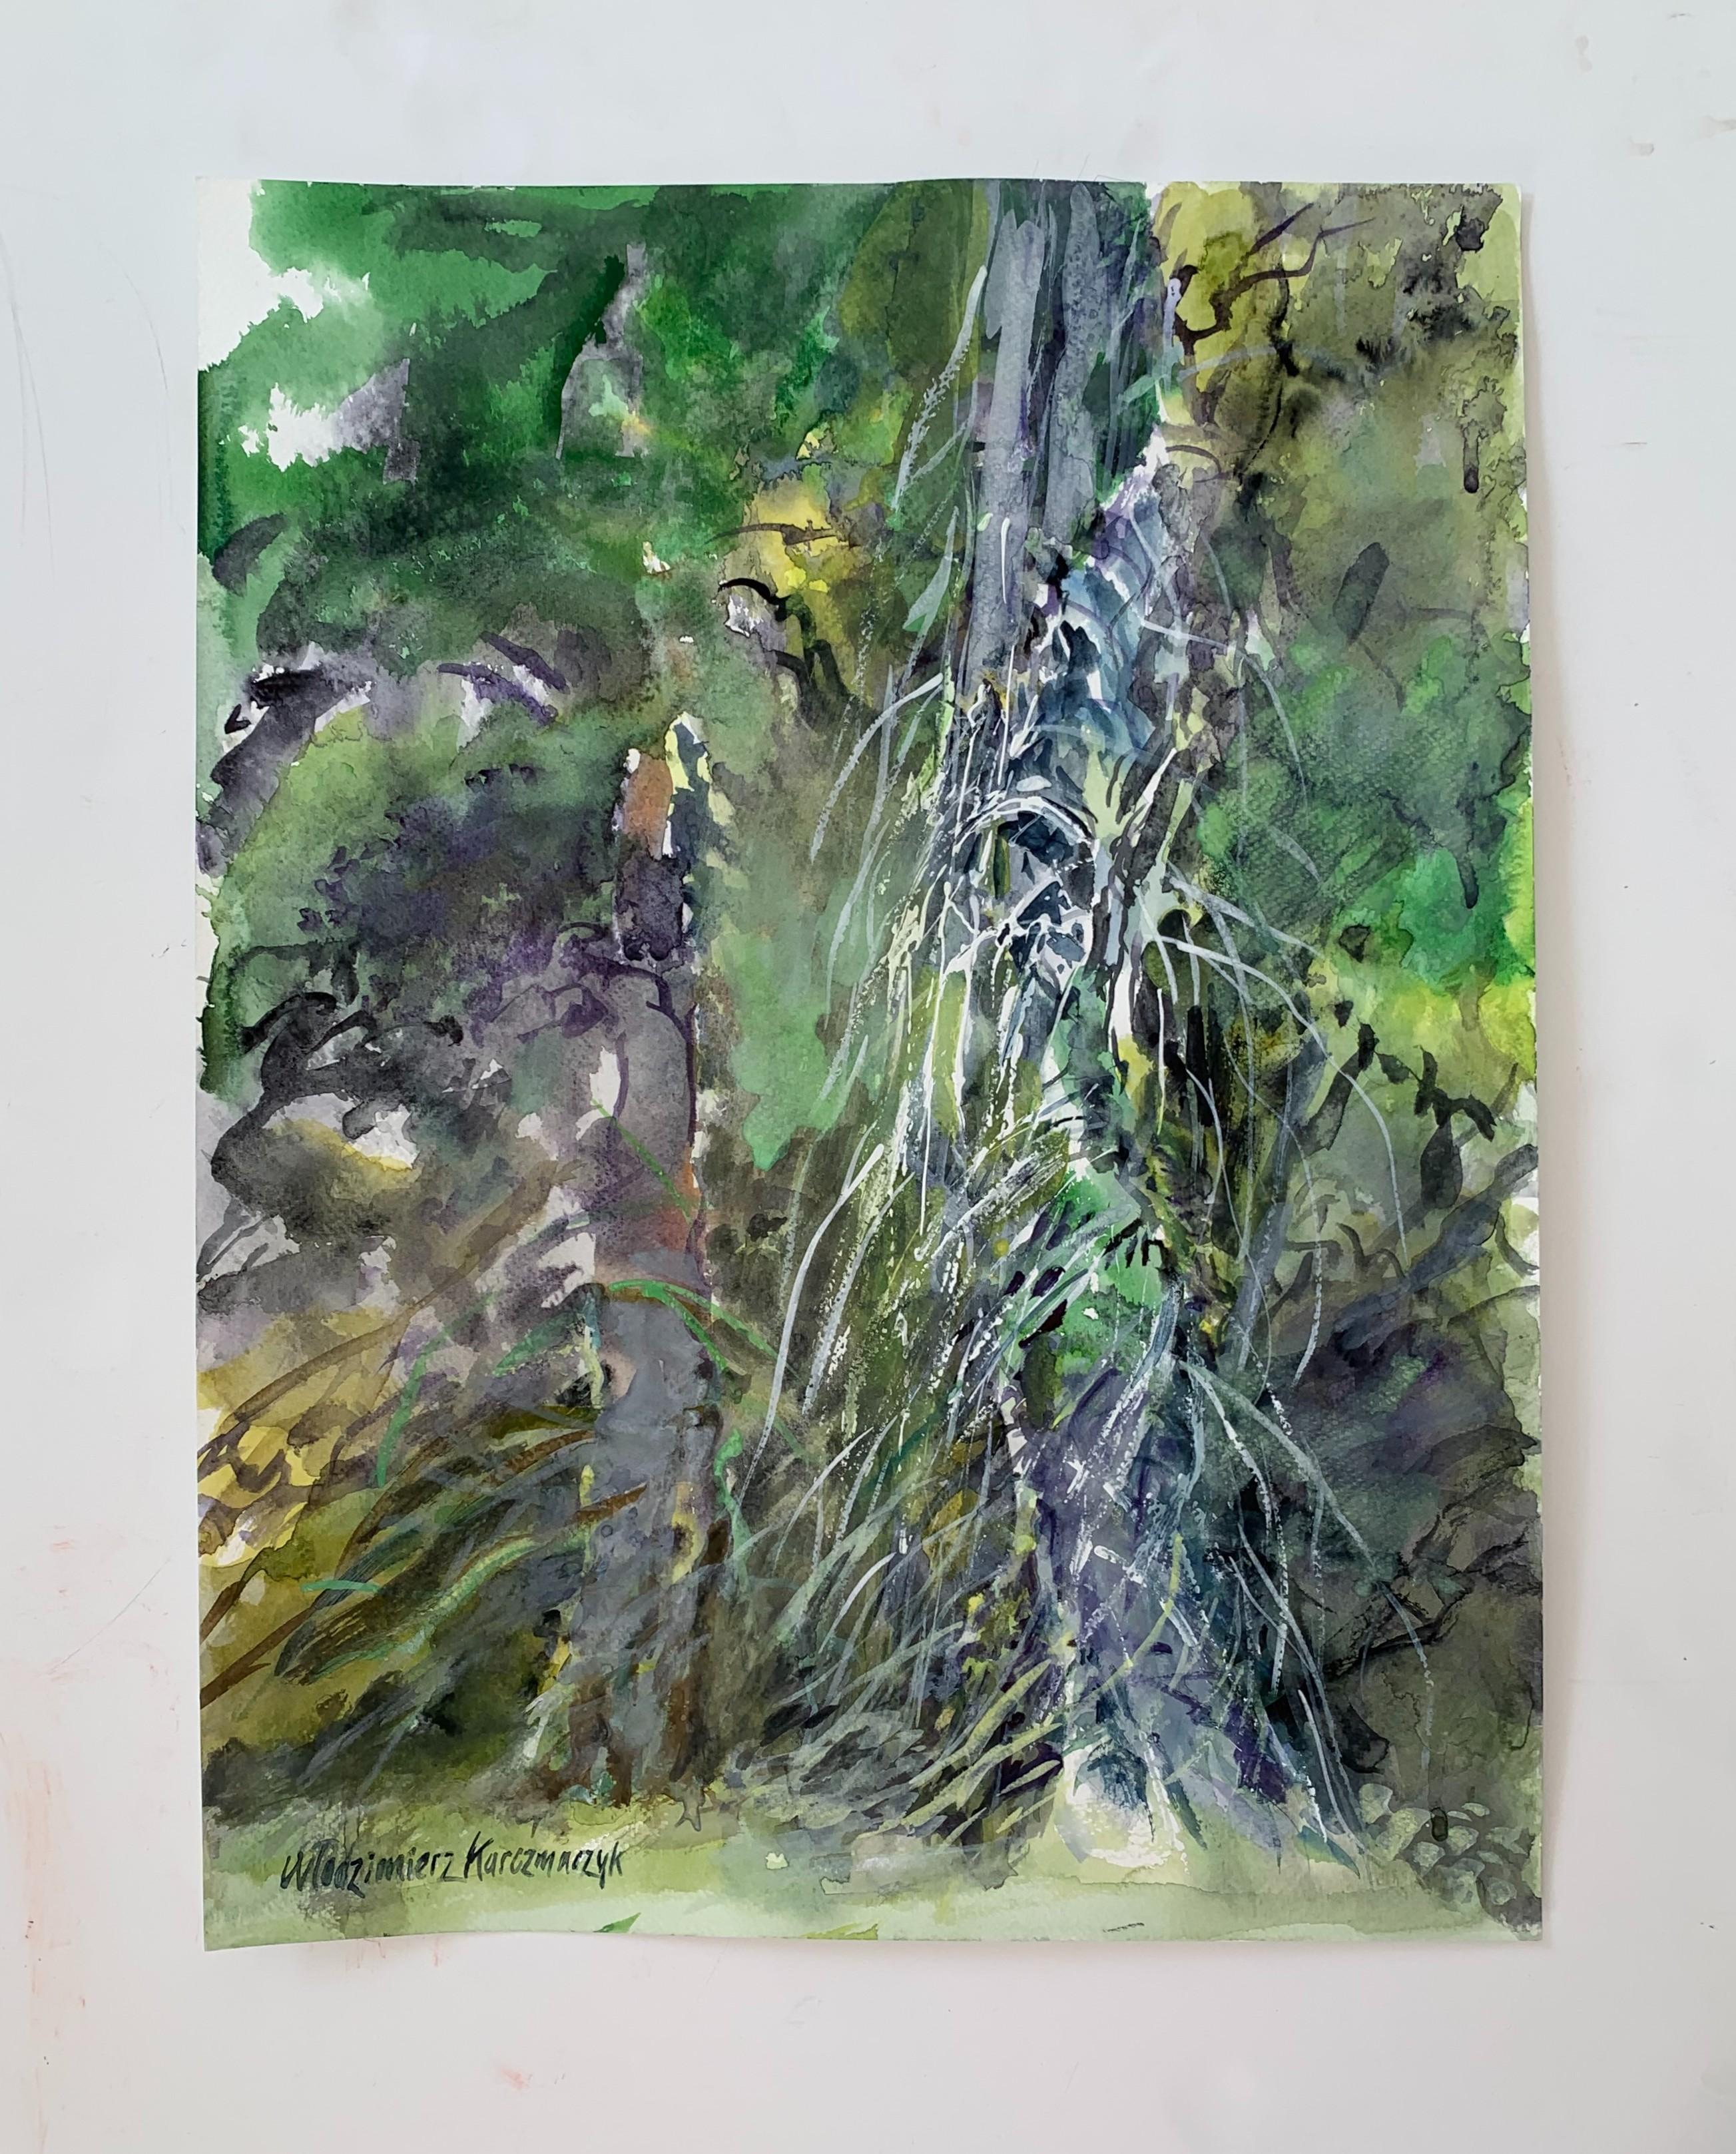 Oliwa, a park - 21 century Figurative Watercolor painting, Trees, Green - Art by Włodzimierz Karczmarzyk